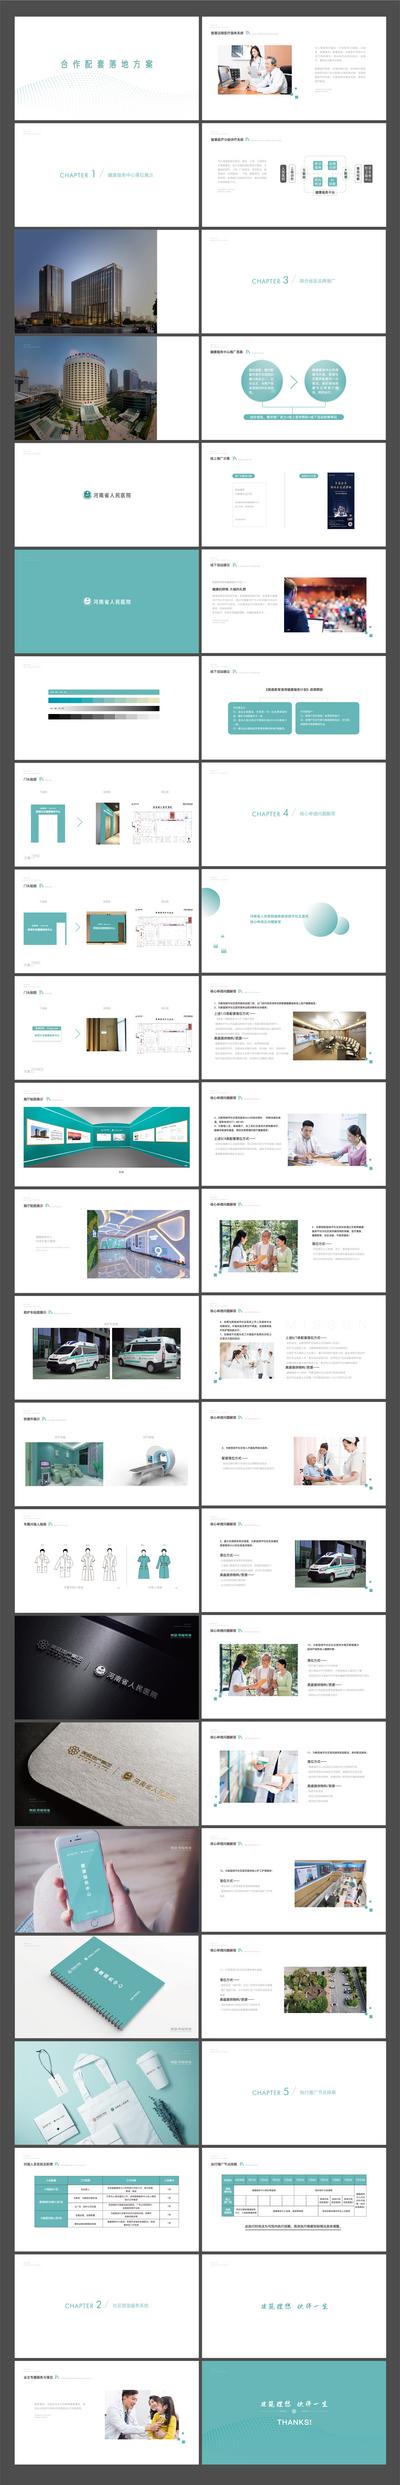 南门网 画册 宣传册 医疗 医院 合作 配套 手册 提案